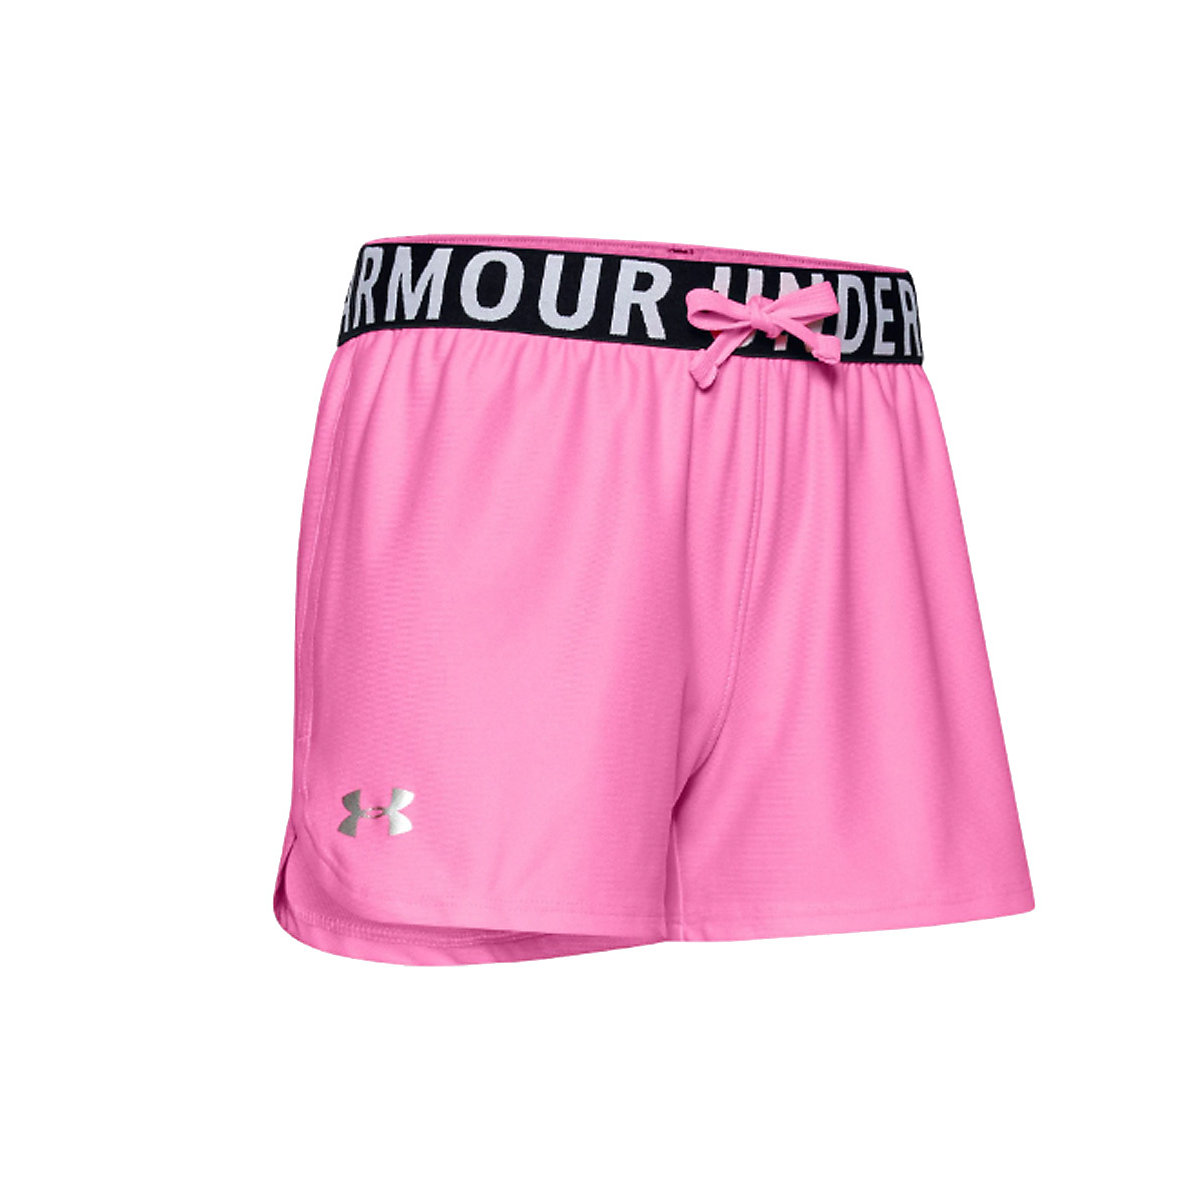 Under Armour Play Up Solid Shorts K 1351714-645 Sportshorts für Mädchen pink